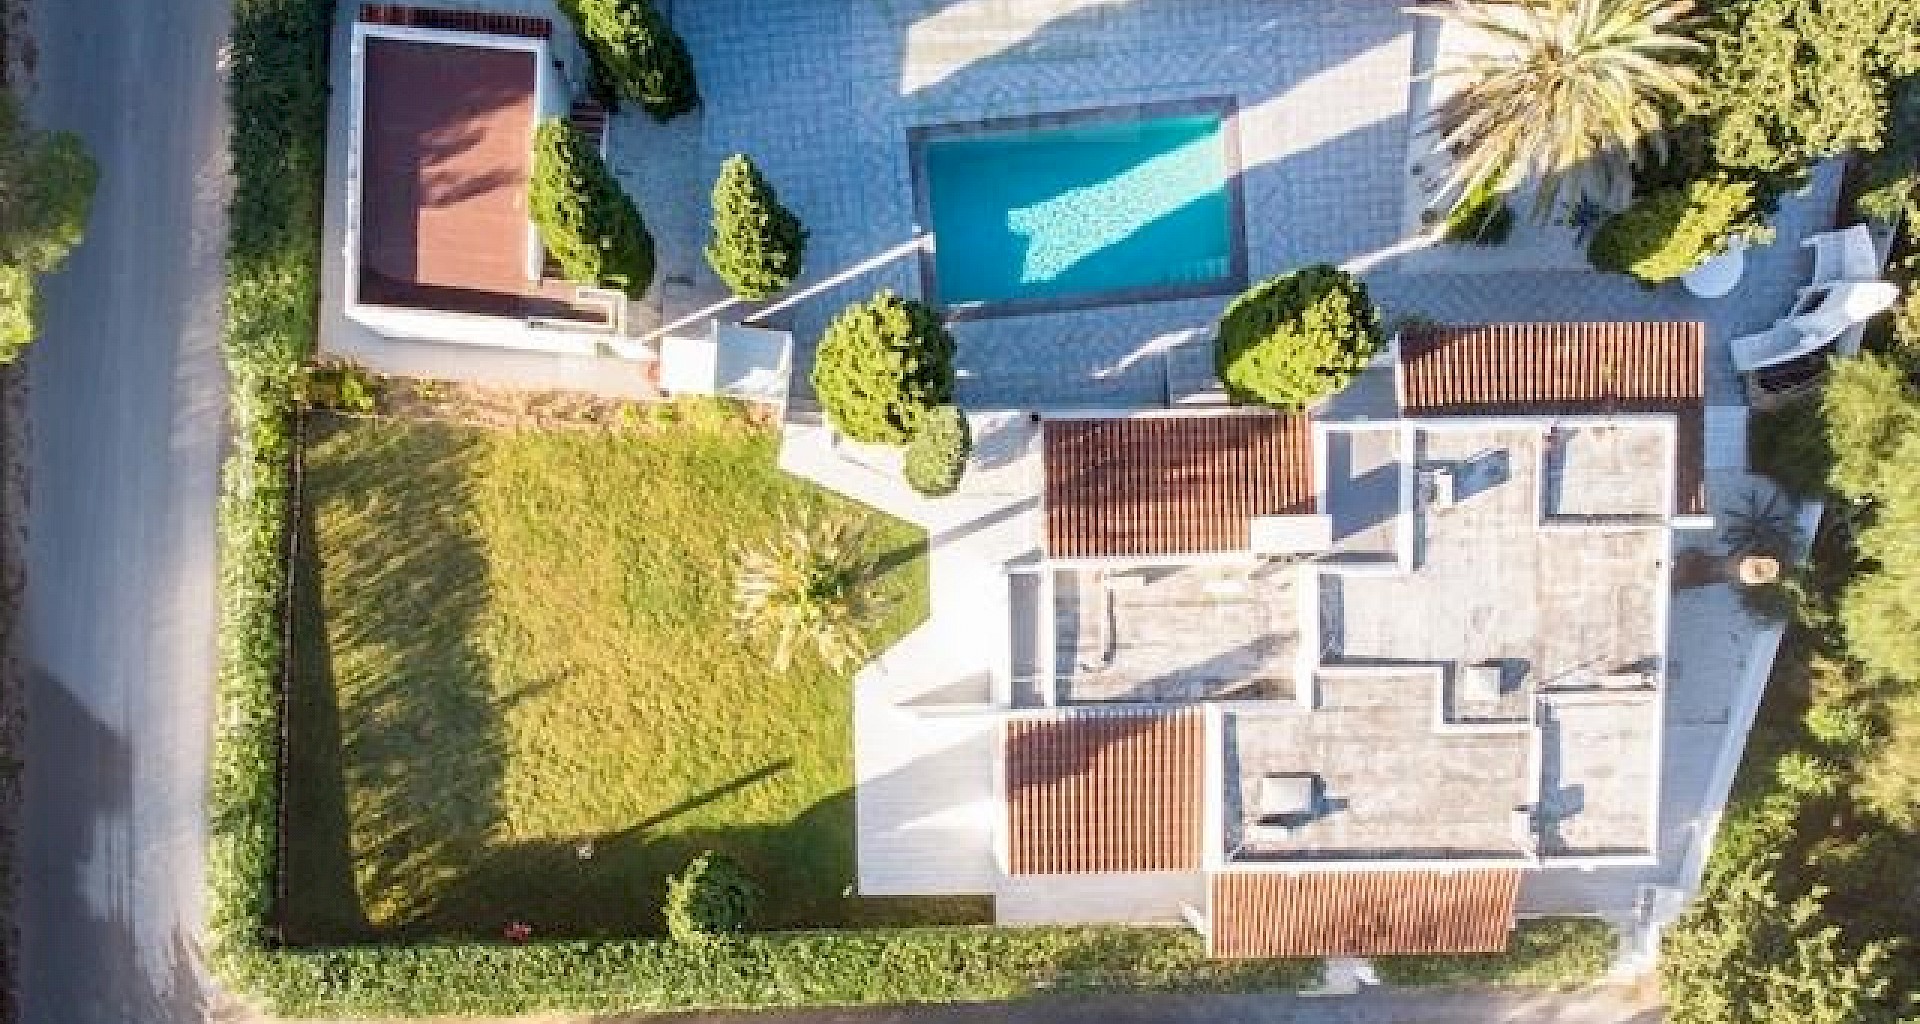 KROHN & LUEDEMANN Casa completamente renovada en Ibiza con piscina y mucha privacidad Benimussa (1)